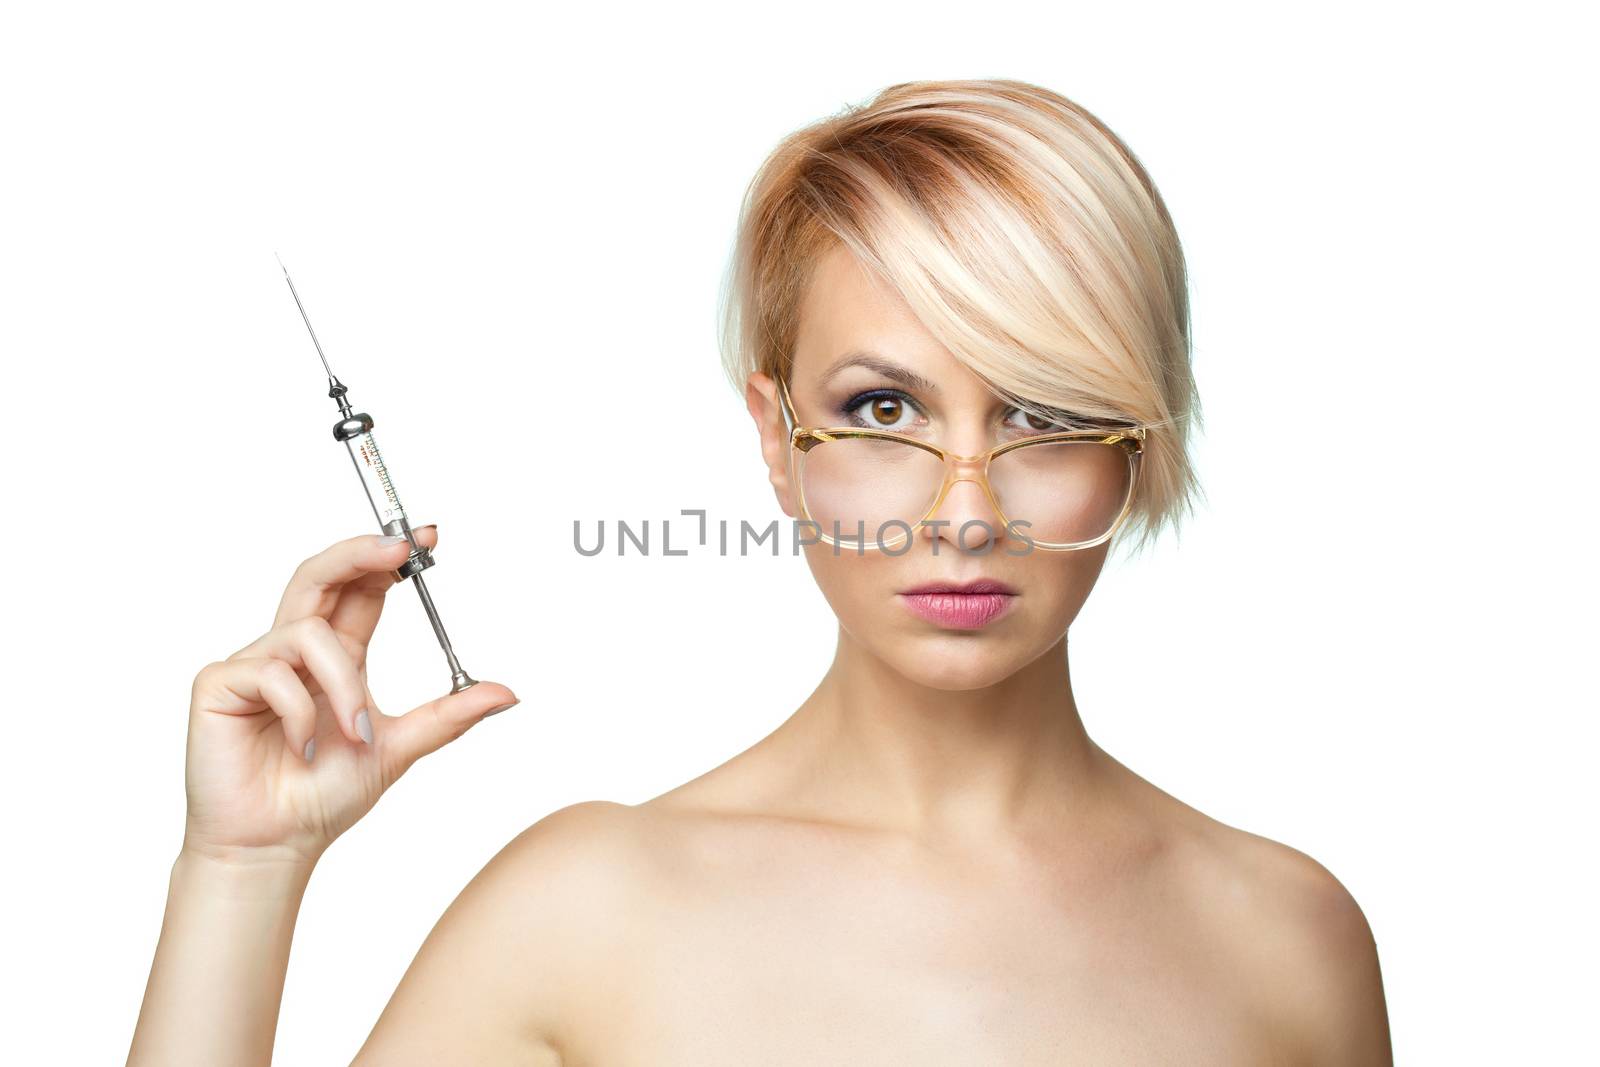 blond nurse with glasses holding a vintage metal syringe